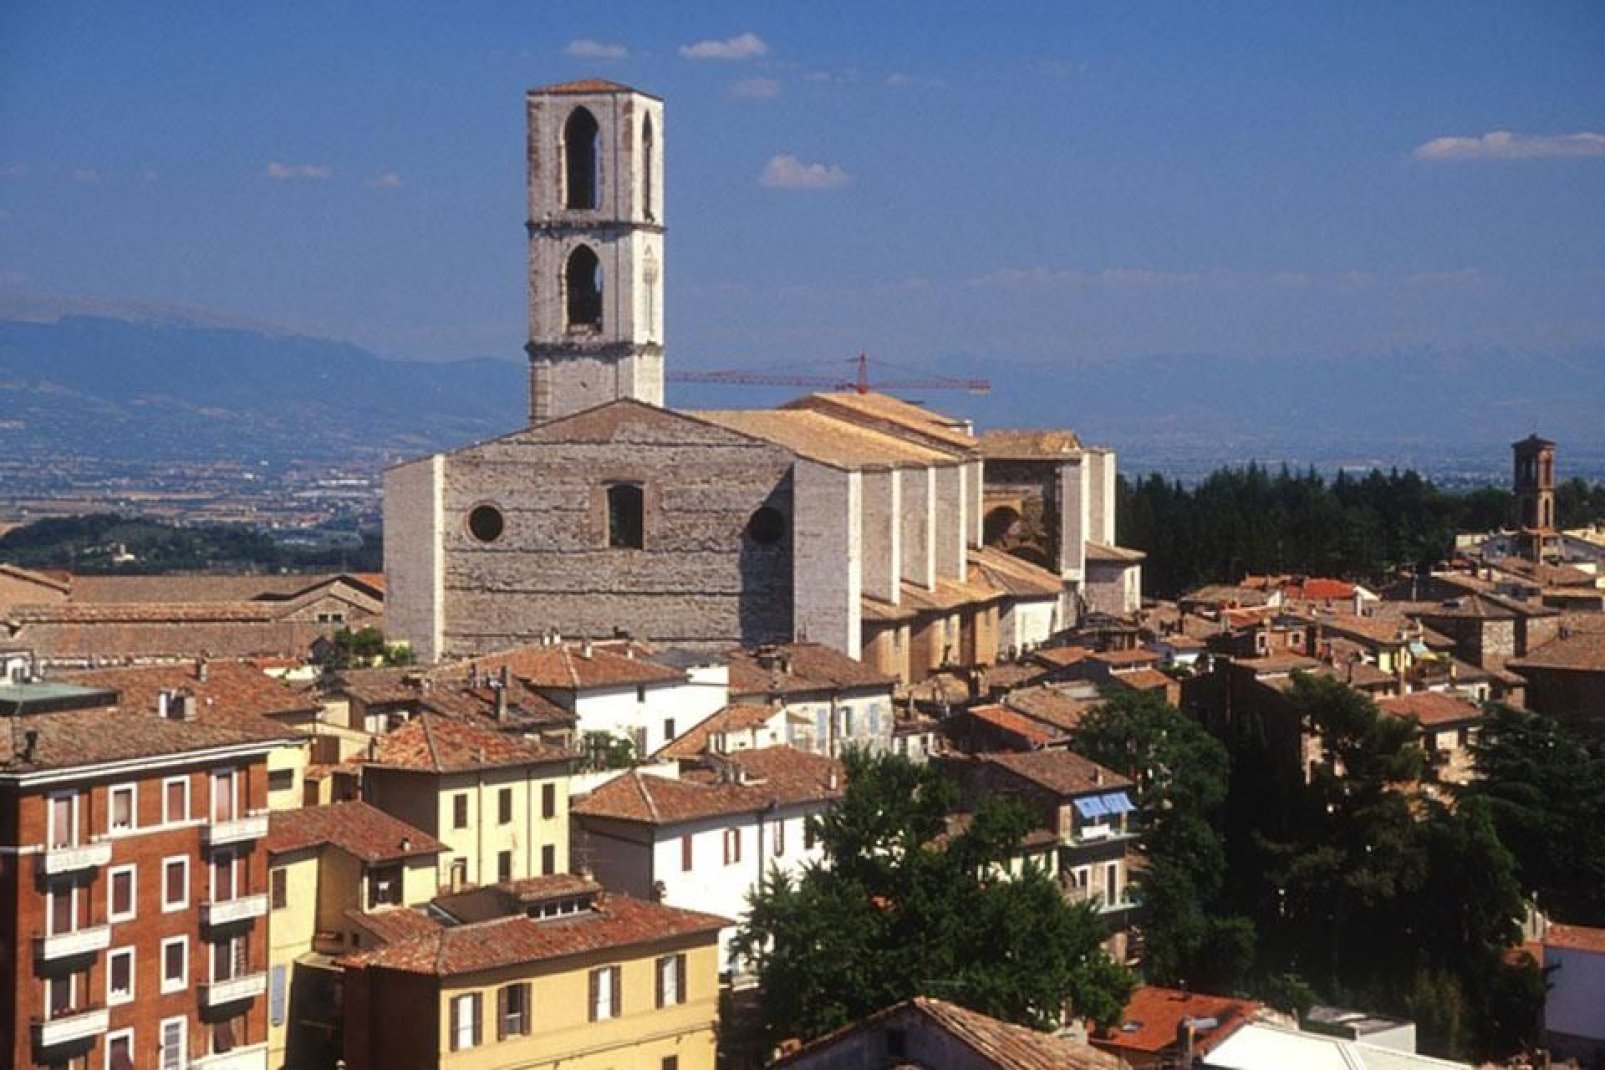 Perugia, capoluogo dell'Umbria, è una città d'arte ricchissima di storia e monumenti